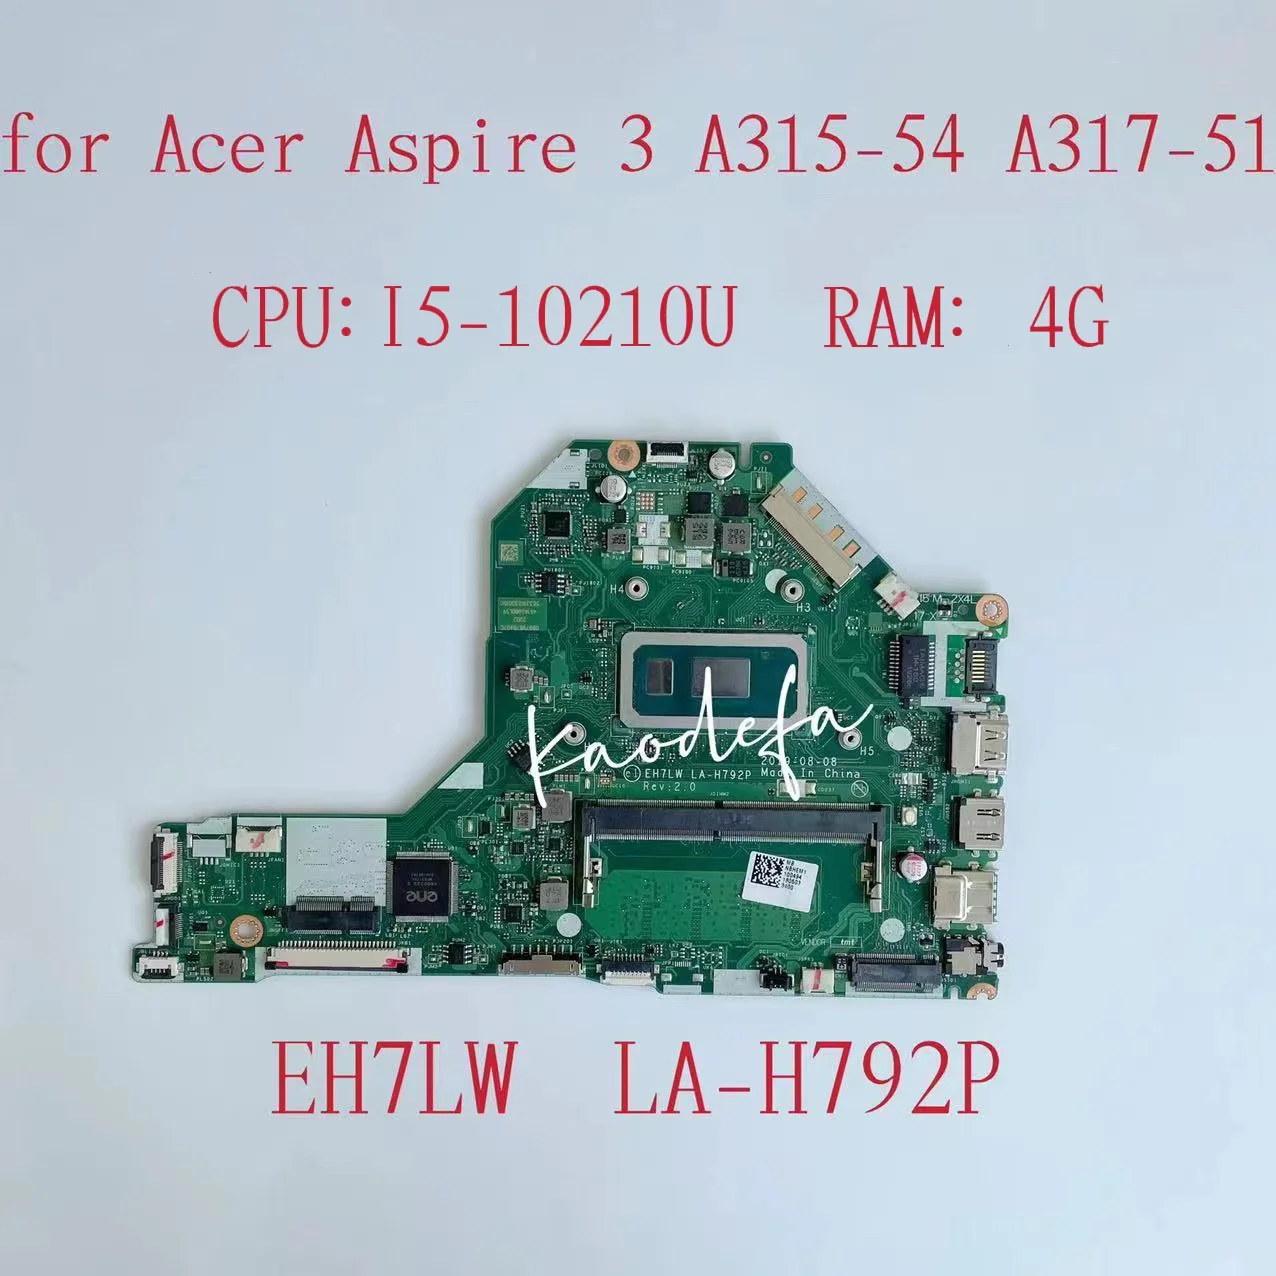 

Материнская плата EH7LW LA-H792P для Acer Aspire 3 A315-54, материнская плата для ноутбука, Процессор: I5-10210U, ОЗУ: 4 Гб, тест 100%, ОК